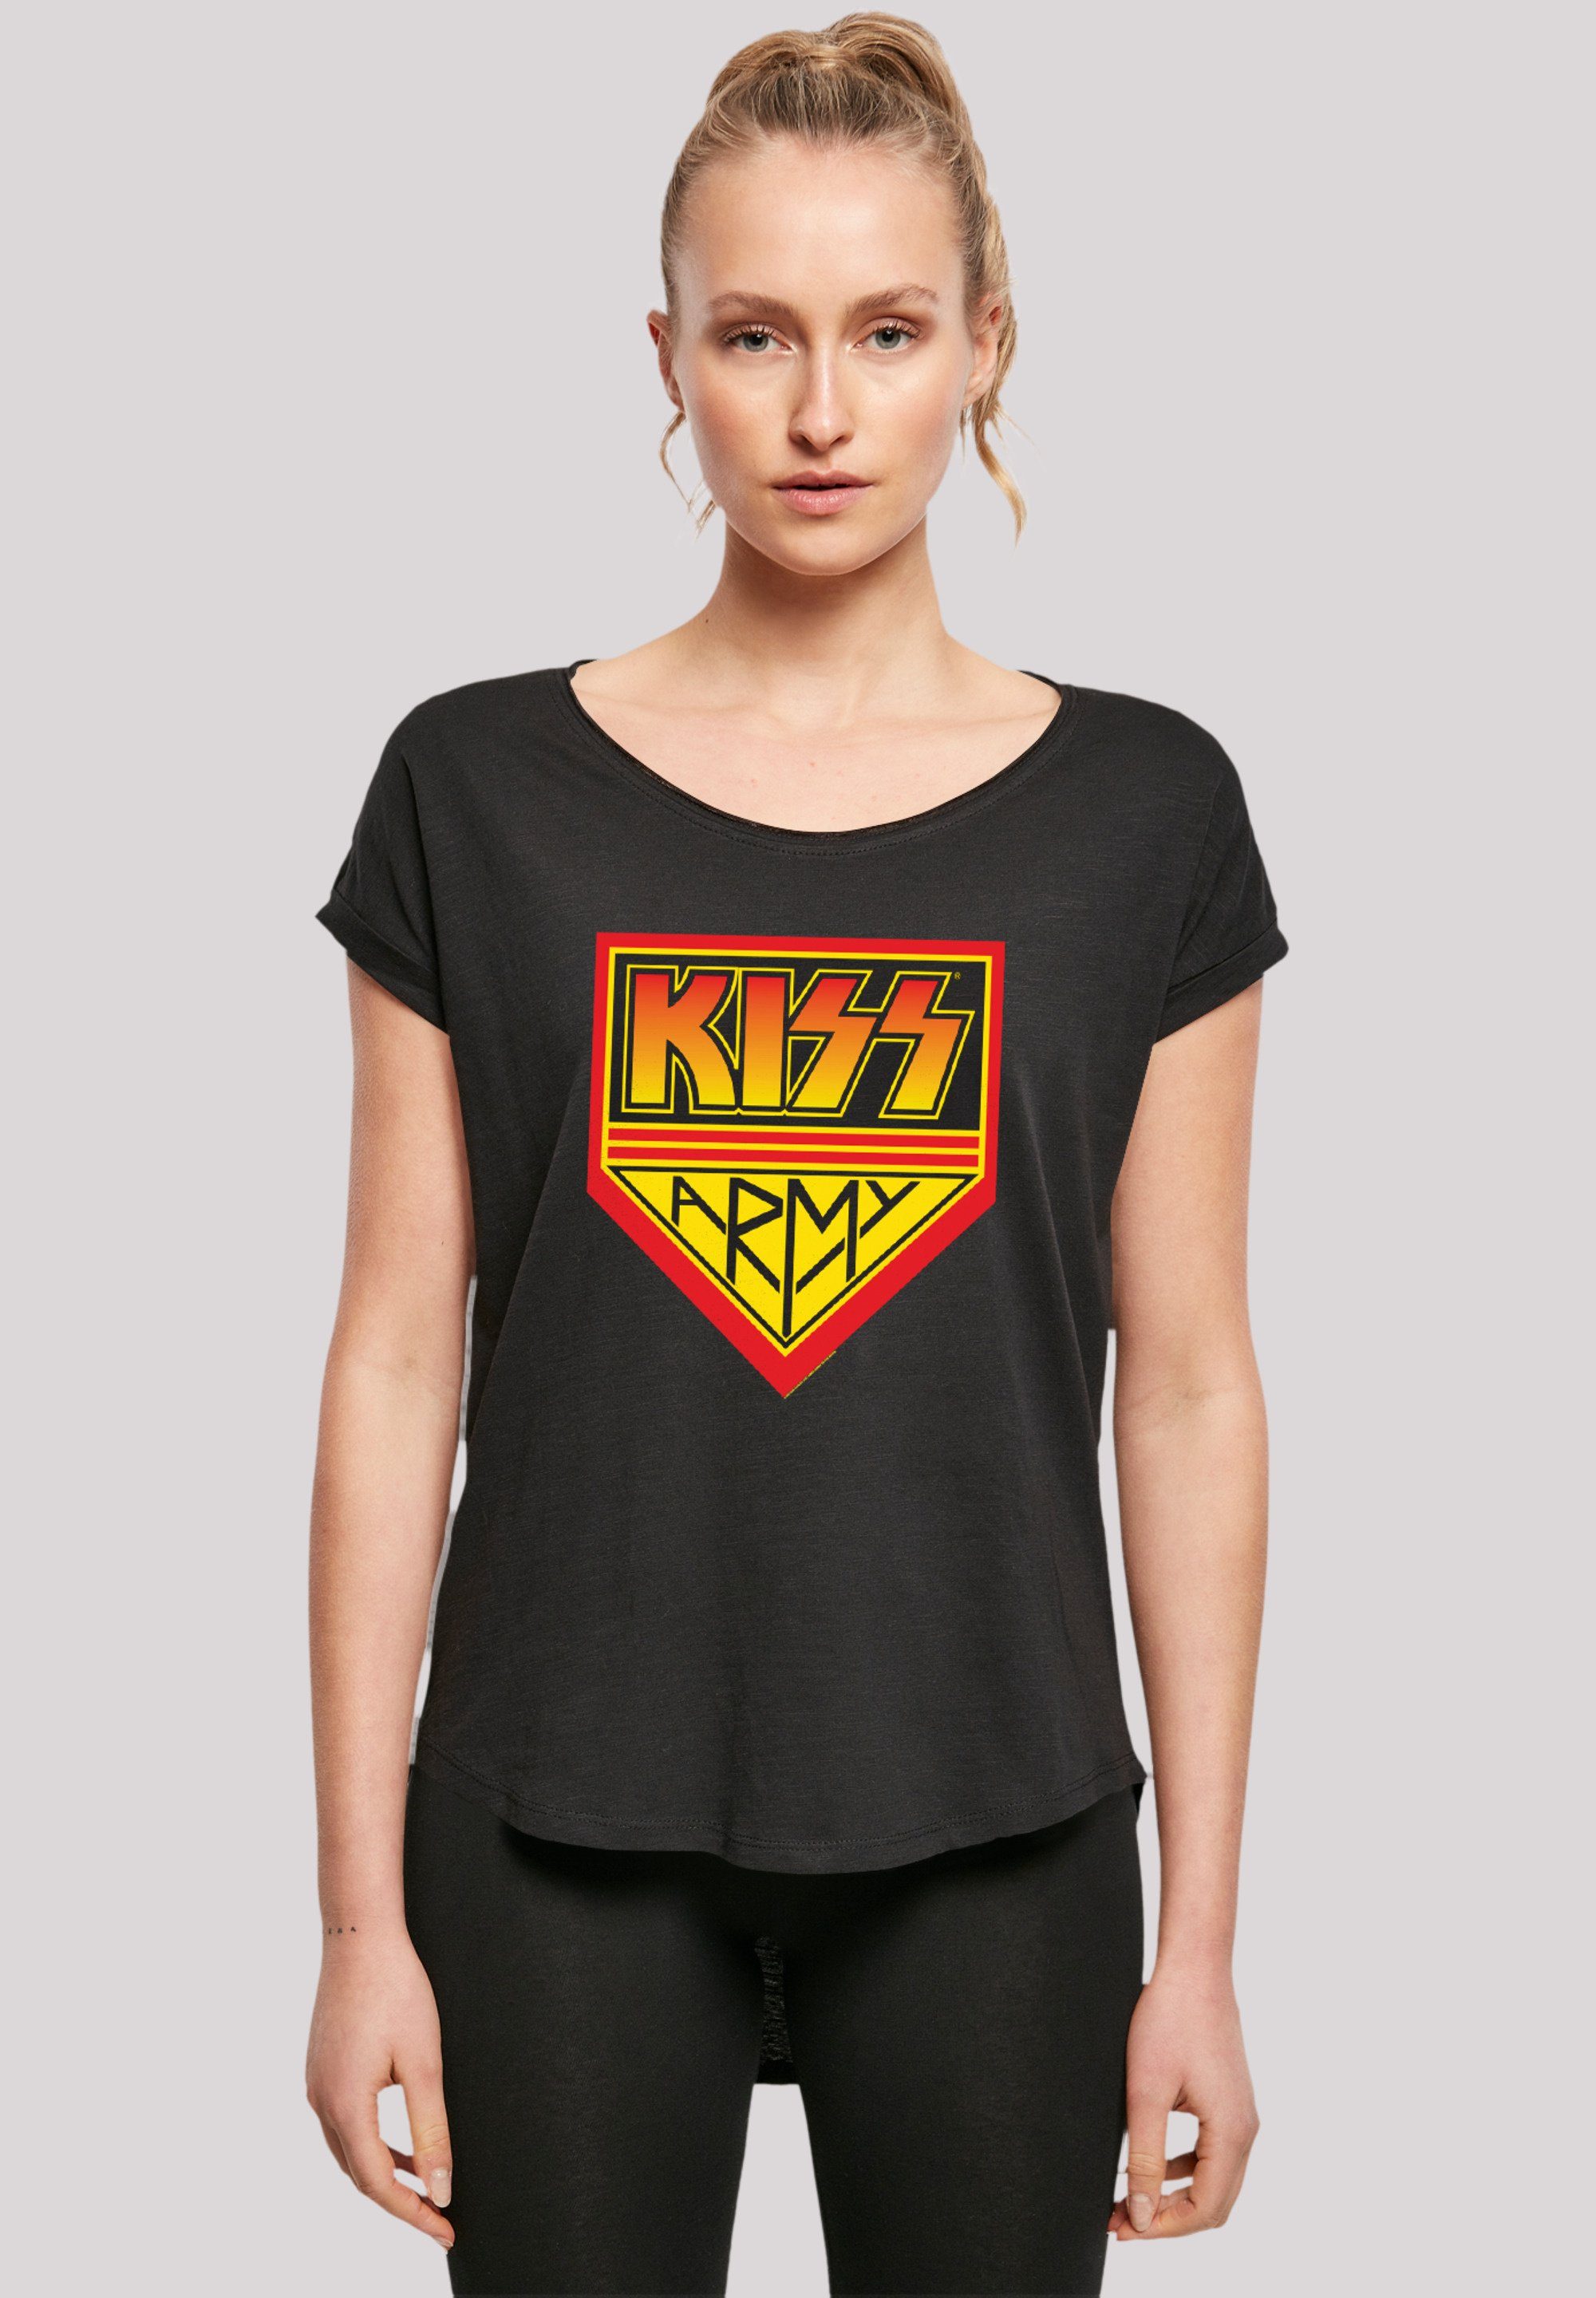 F4NT4STIC T-Shirt Kiss Rock Band Army Logo Premium Qualität, Musik, By Rock  Off, Hinten extra lang geschnittenes Damen T-Shirt